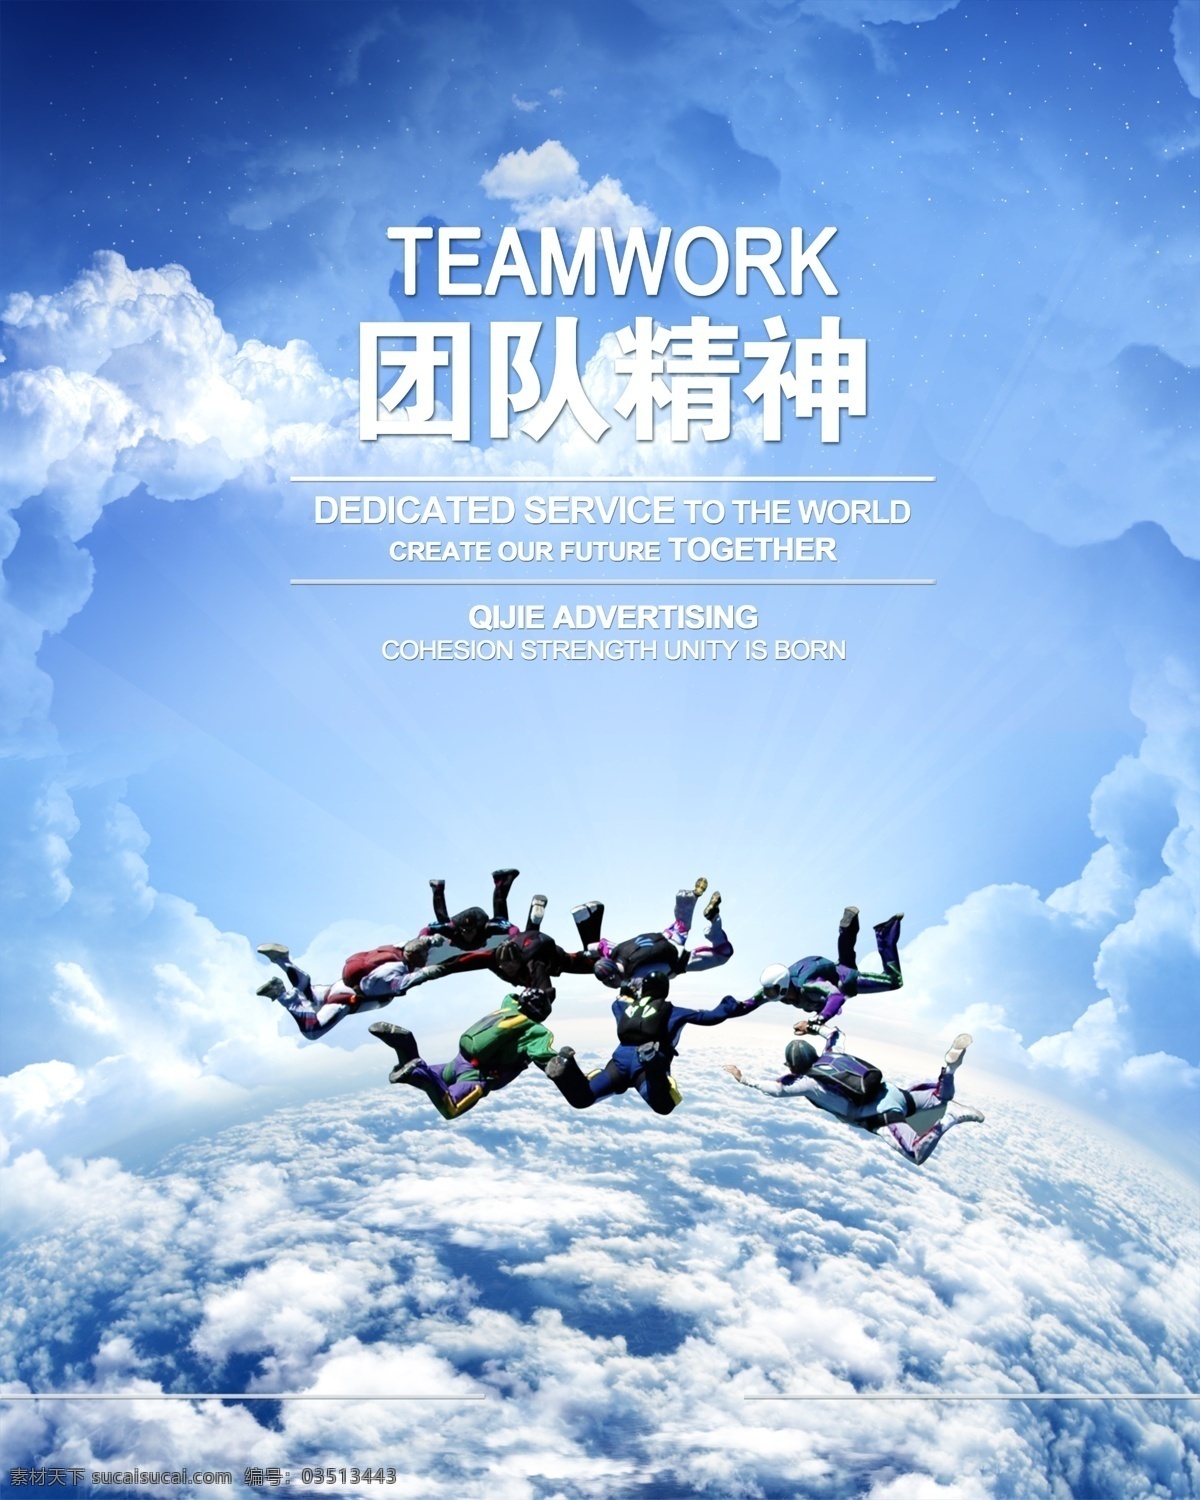 团队 团队合作 团队协作 花样跳伞 花式跳伞 唯美 炫酷 运动 体能运动 竞技 高空跳伞 极限运动 天空 云海